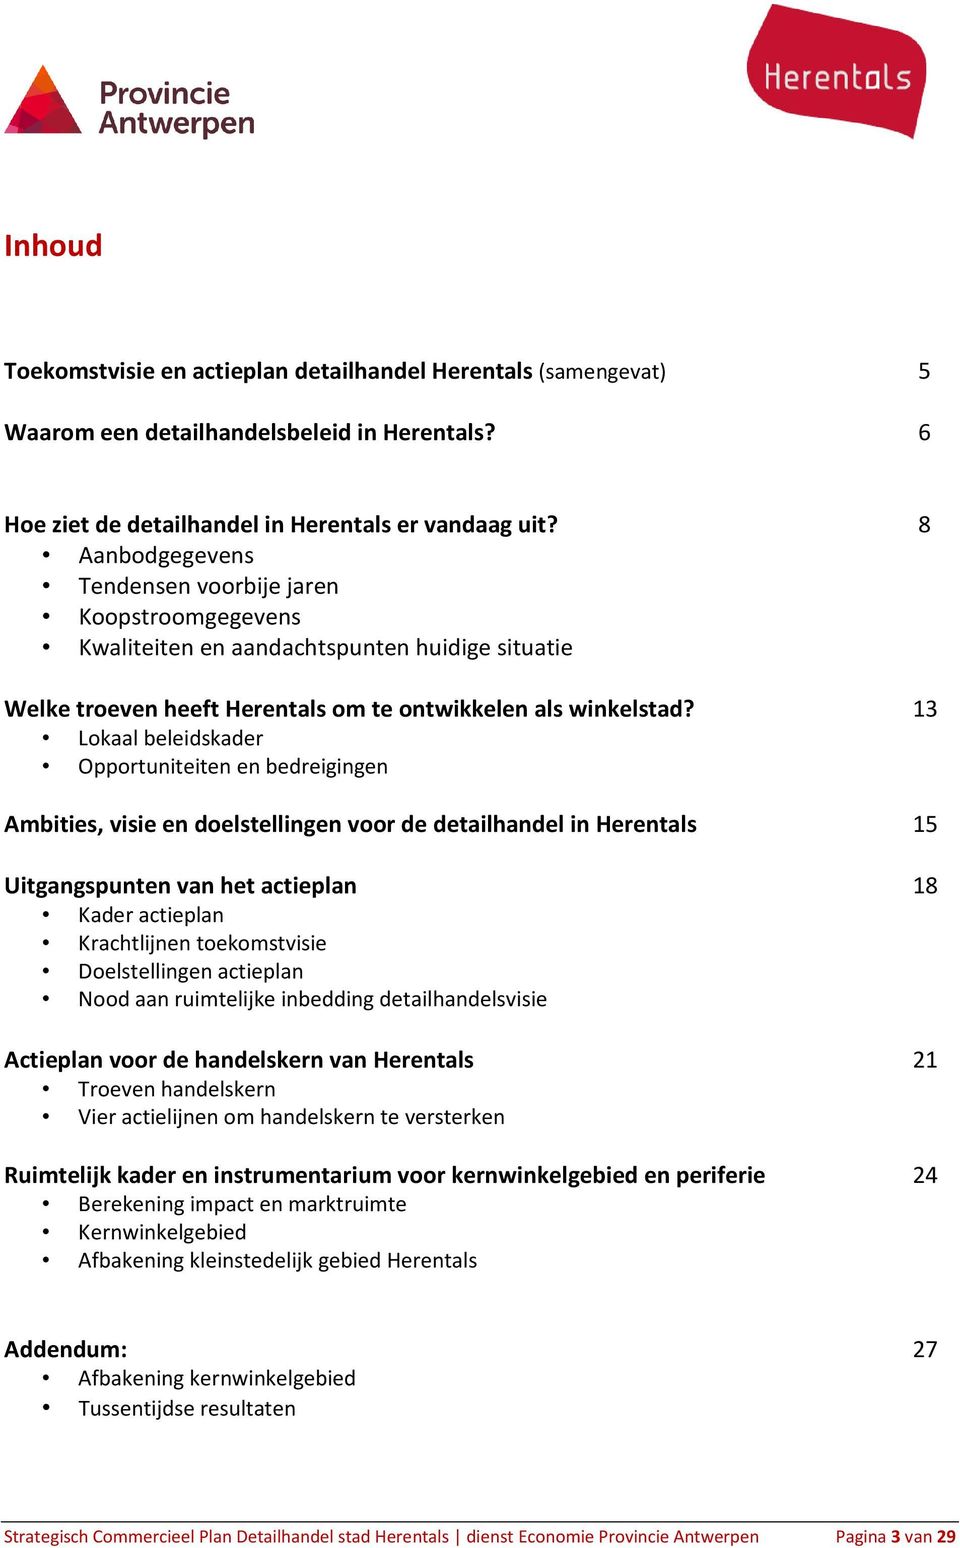 13 Lokaal beleidskader Opportuniteiten en bedreigingen Ambities, visie en doelstellingen voor de detailhandel in Herentals 15 Uitgangspunten van het actieplan 18 Kader actieplan Krachtlijnen